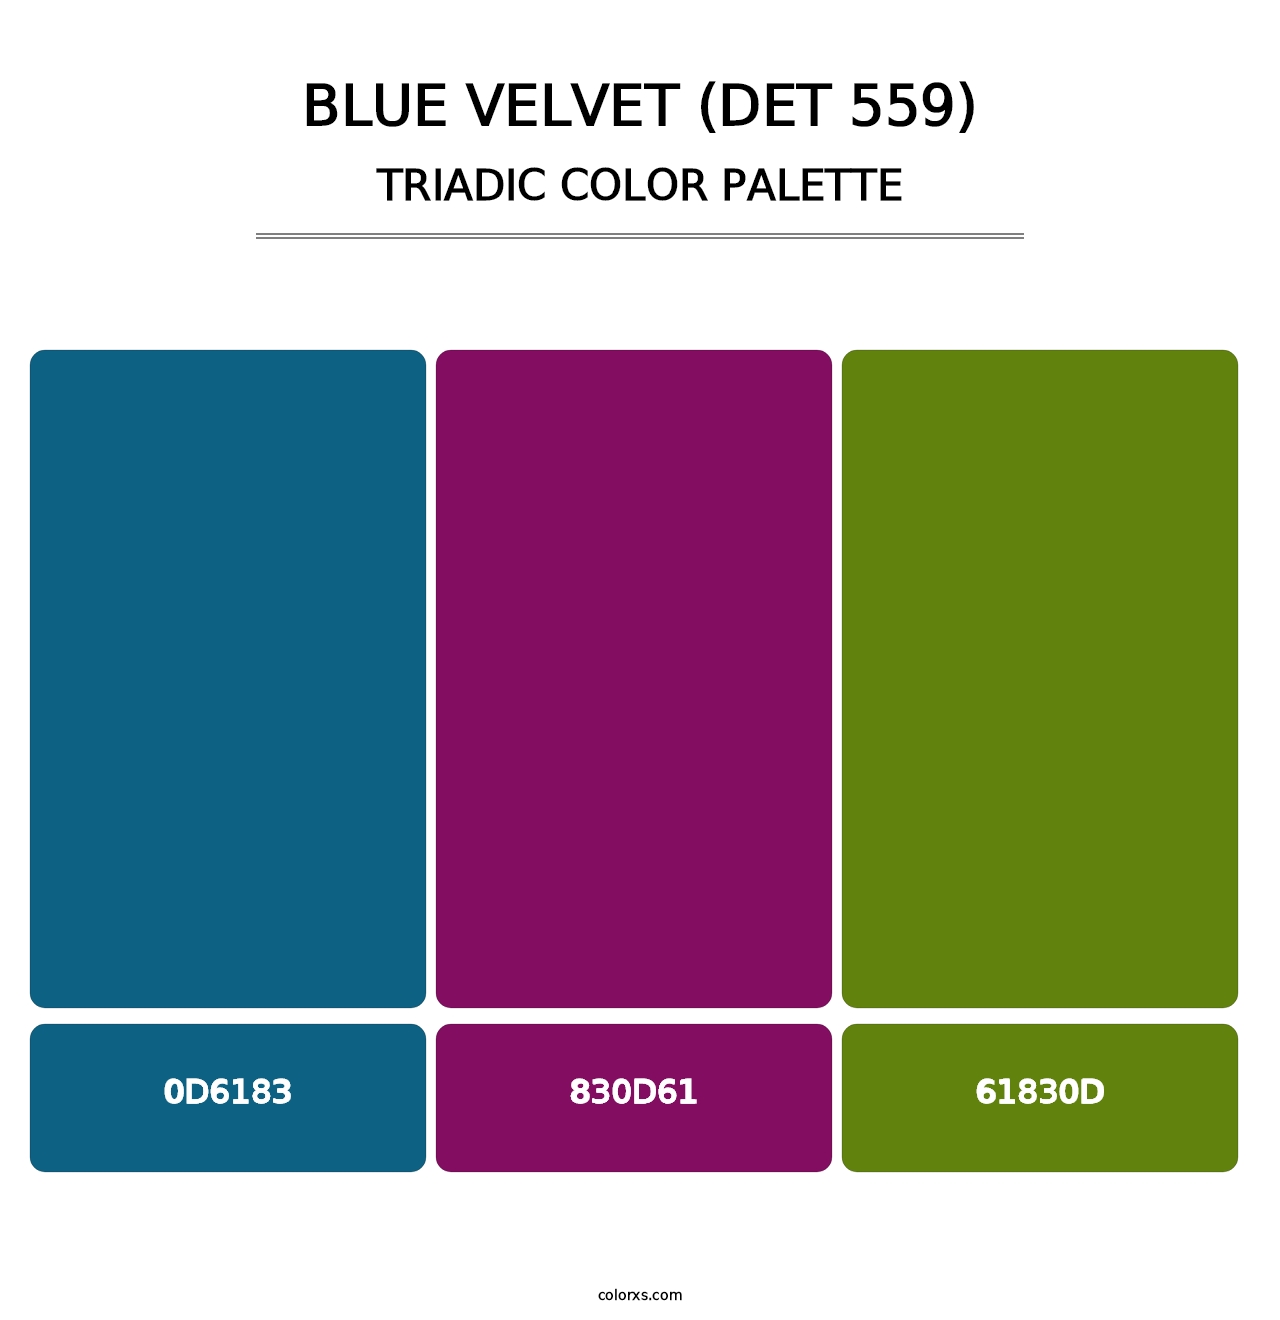 Blue Velvet (DET 559) - Triadic Color Palette